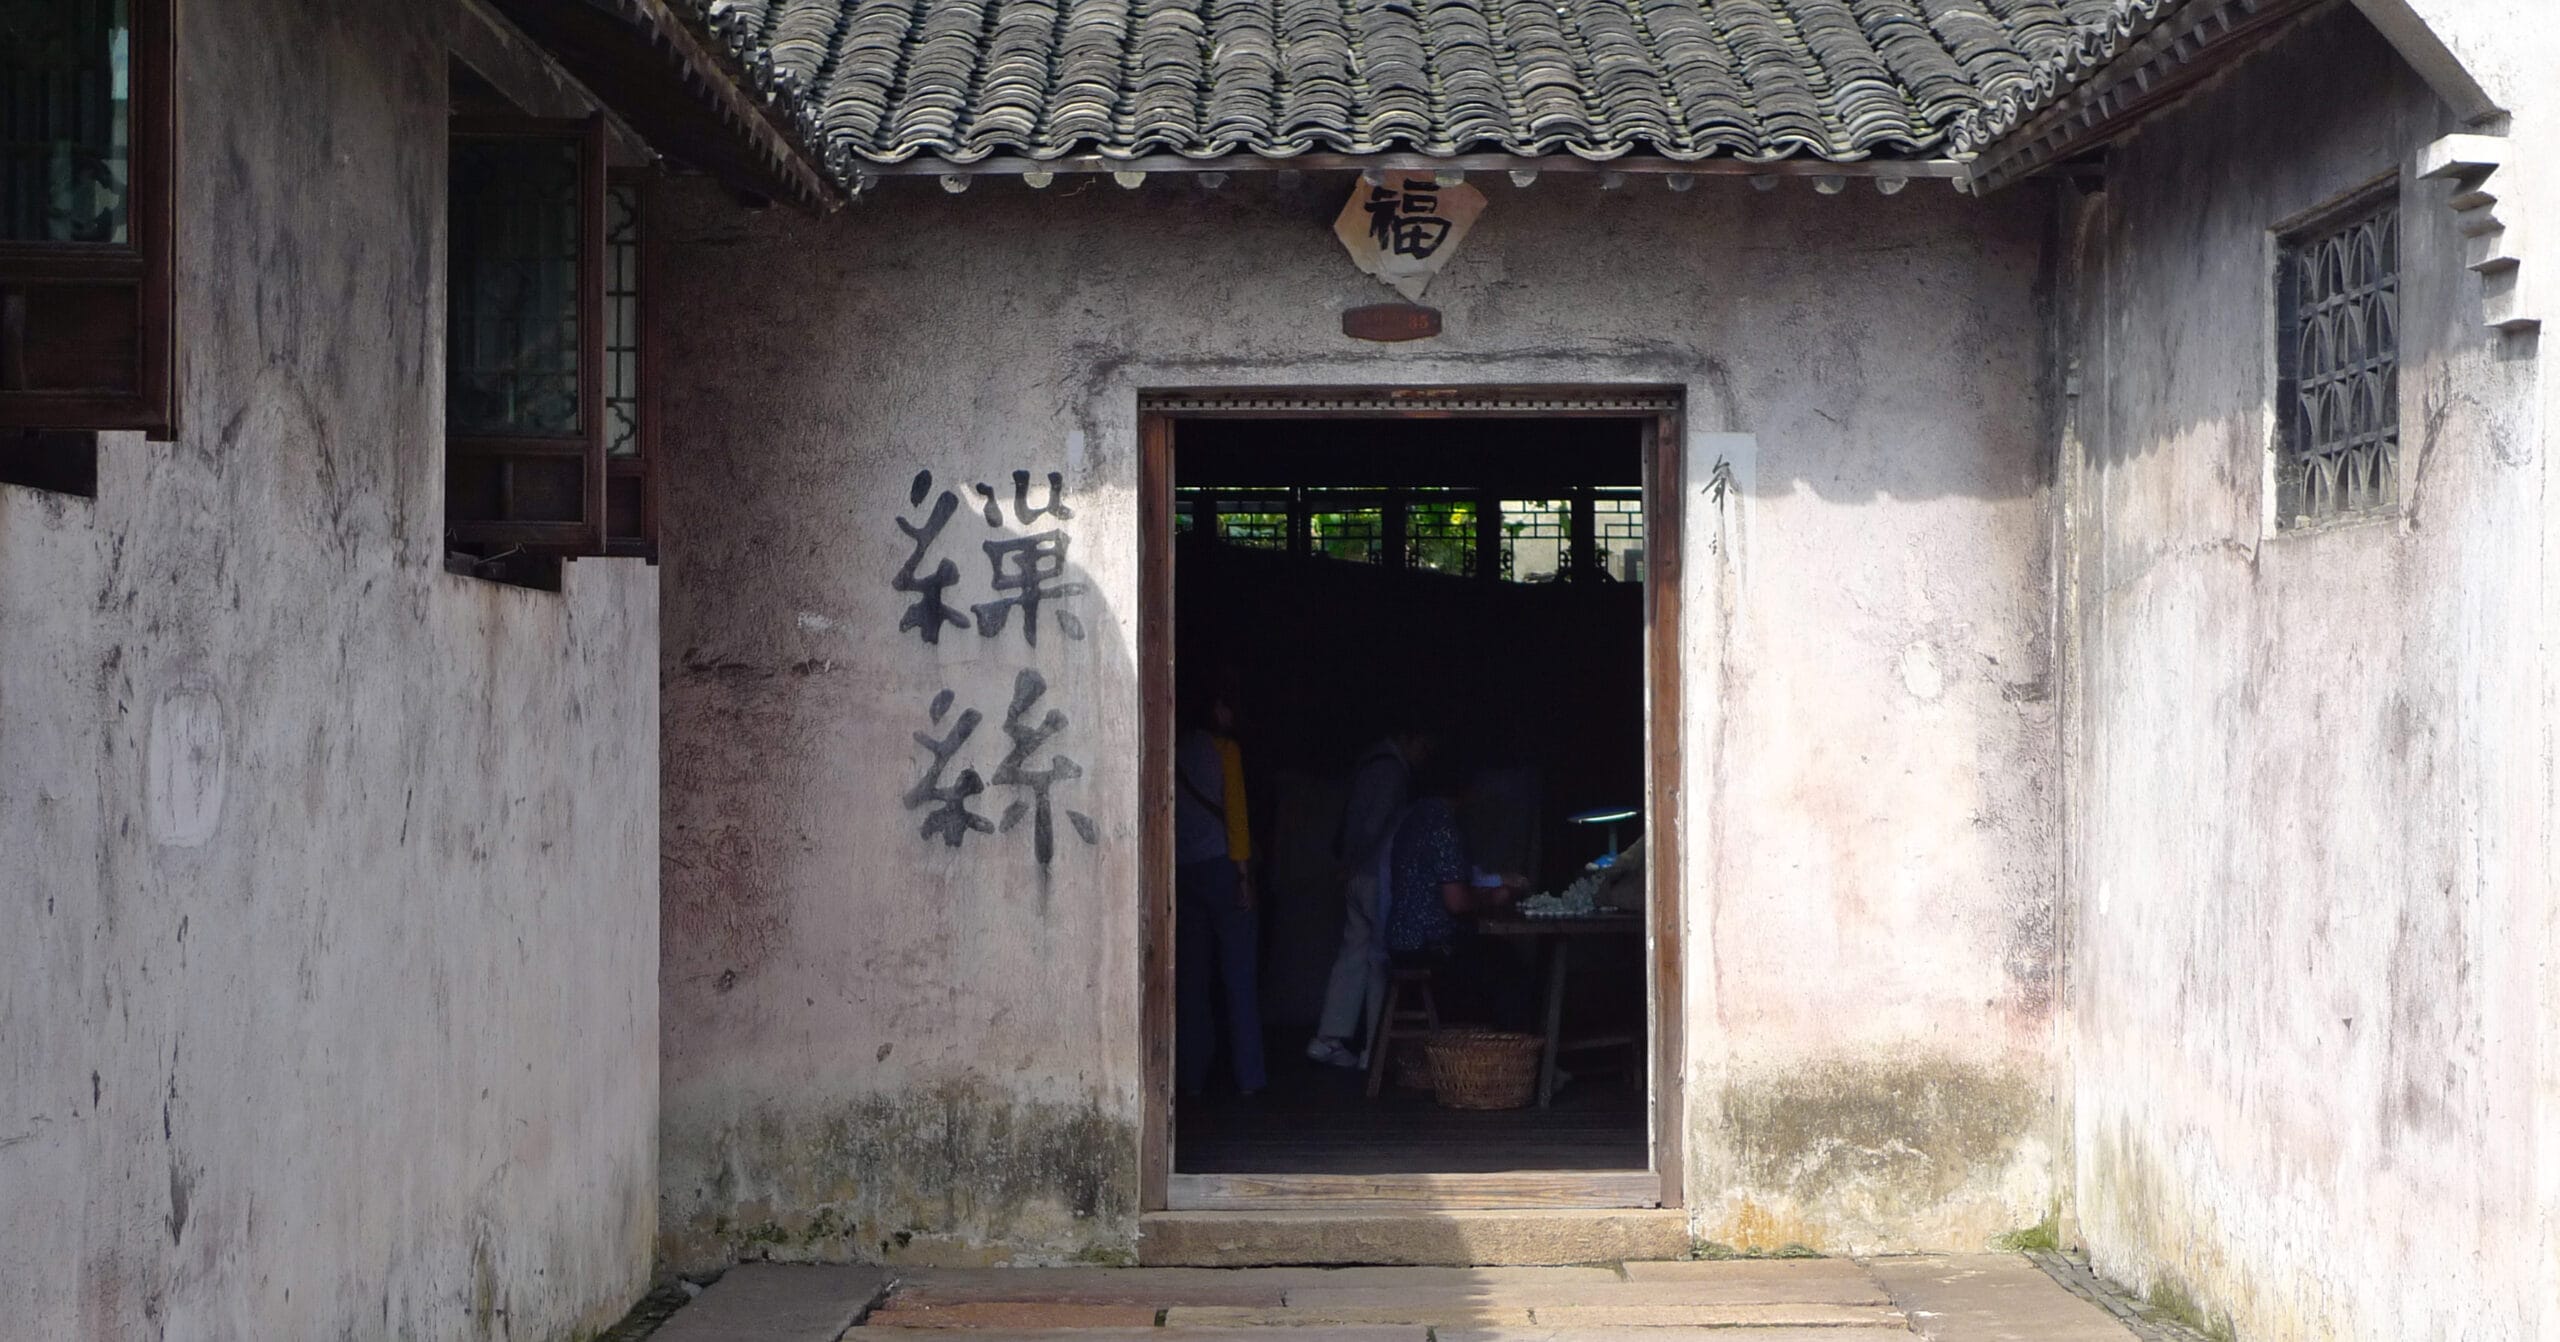 Silk Production in Wuzhen